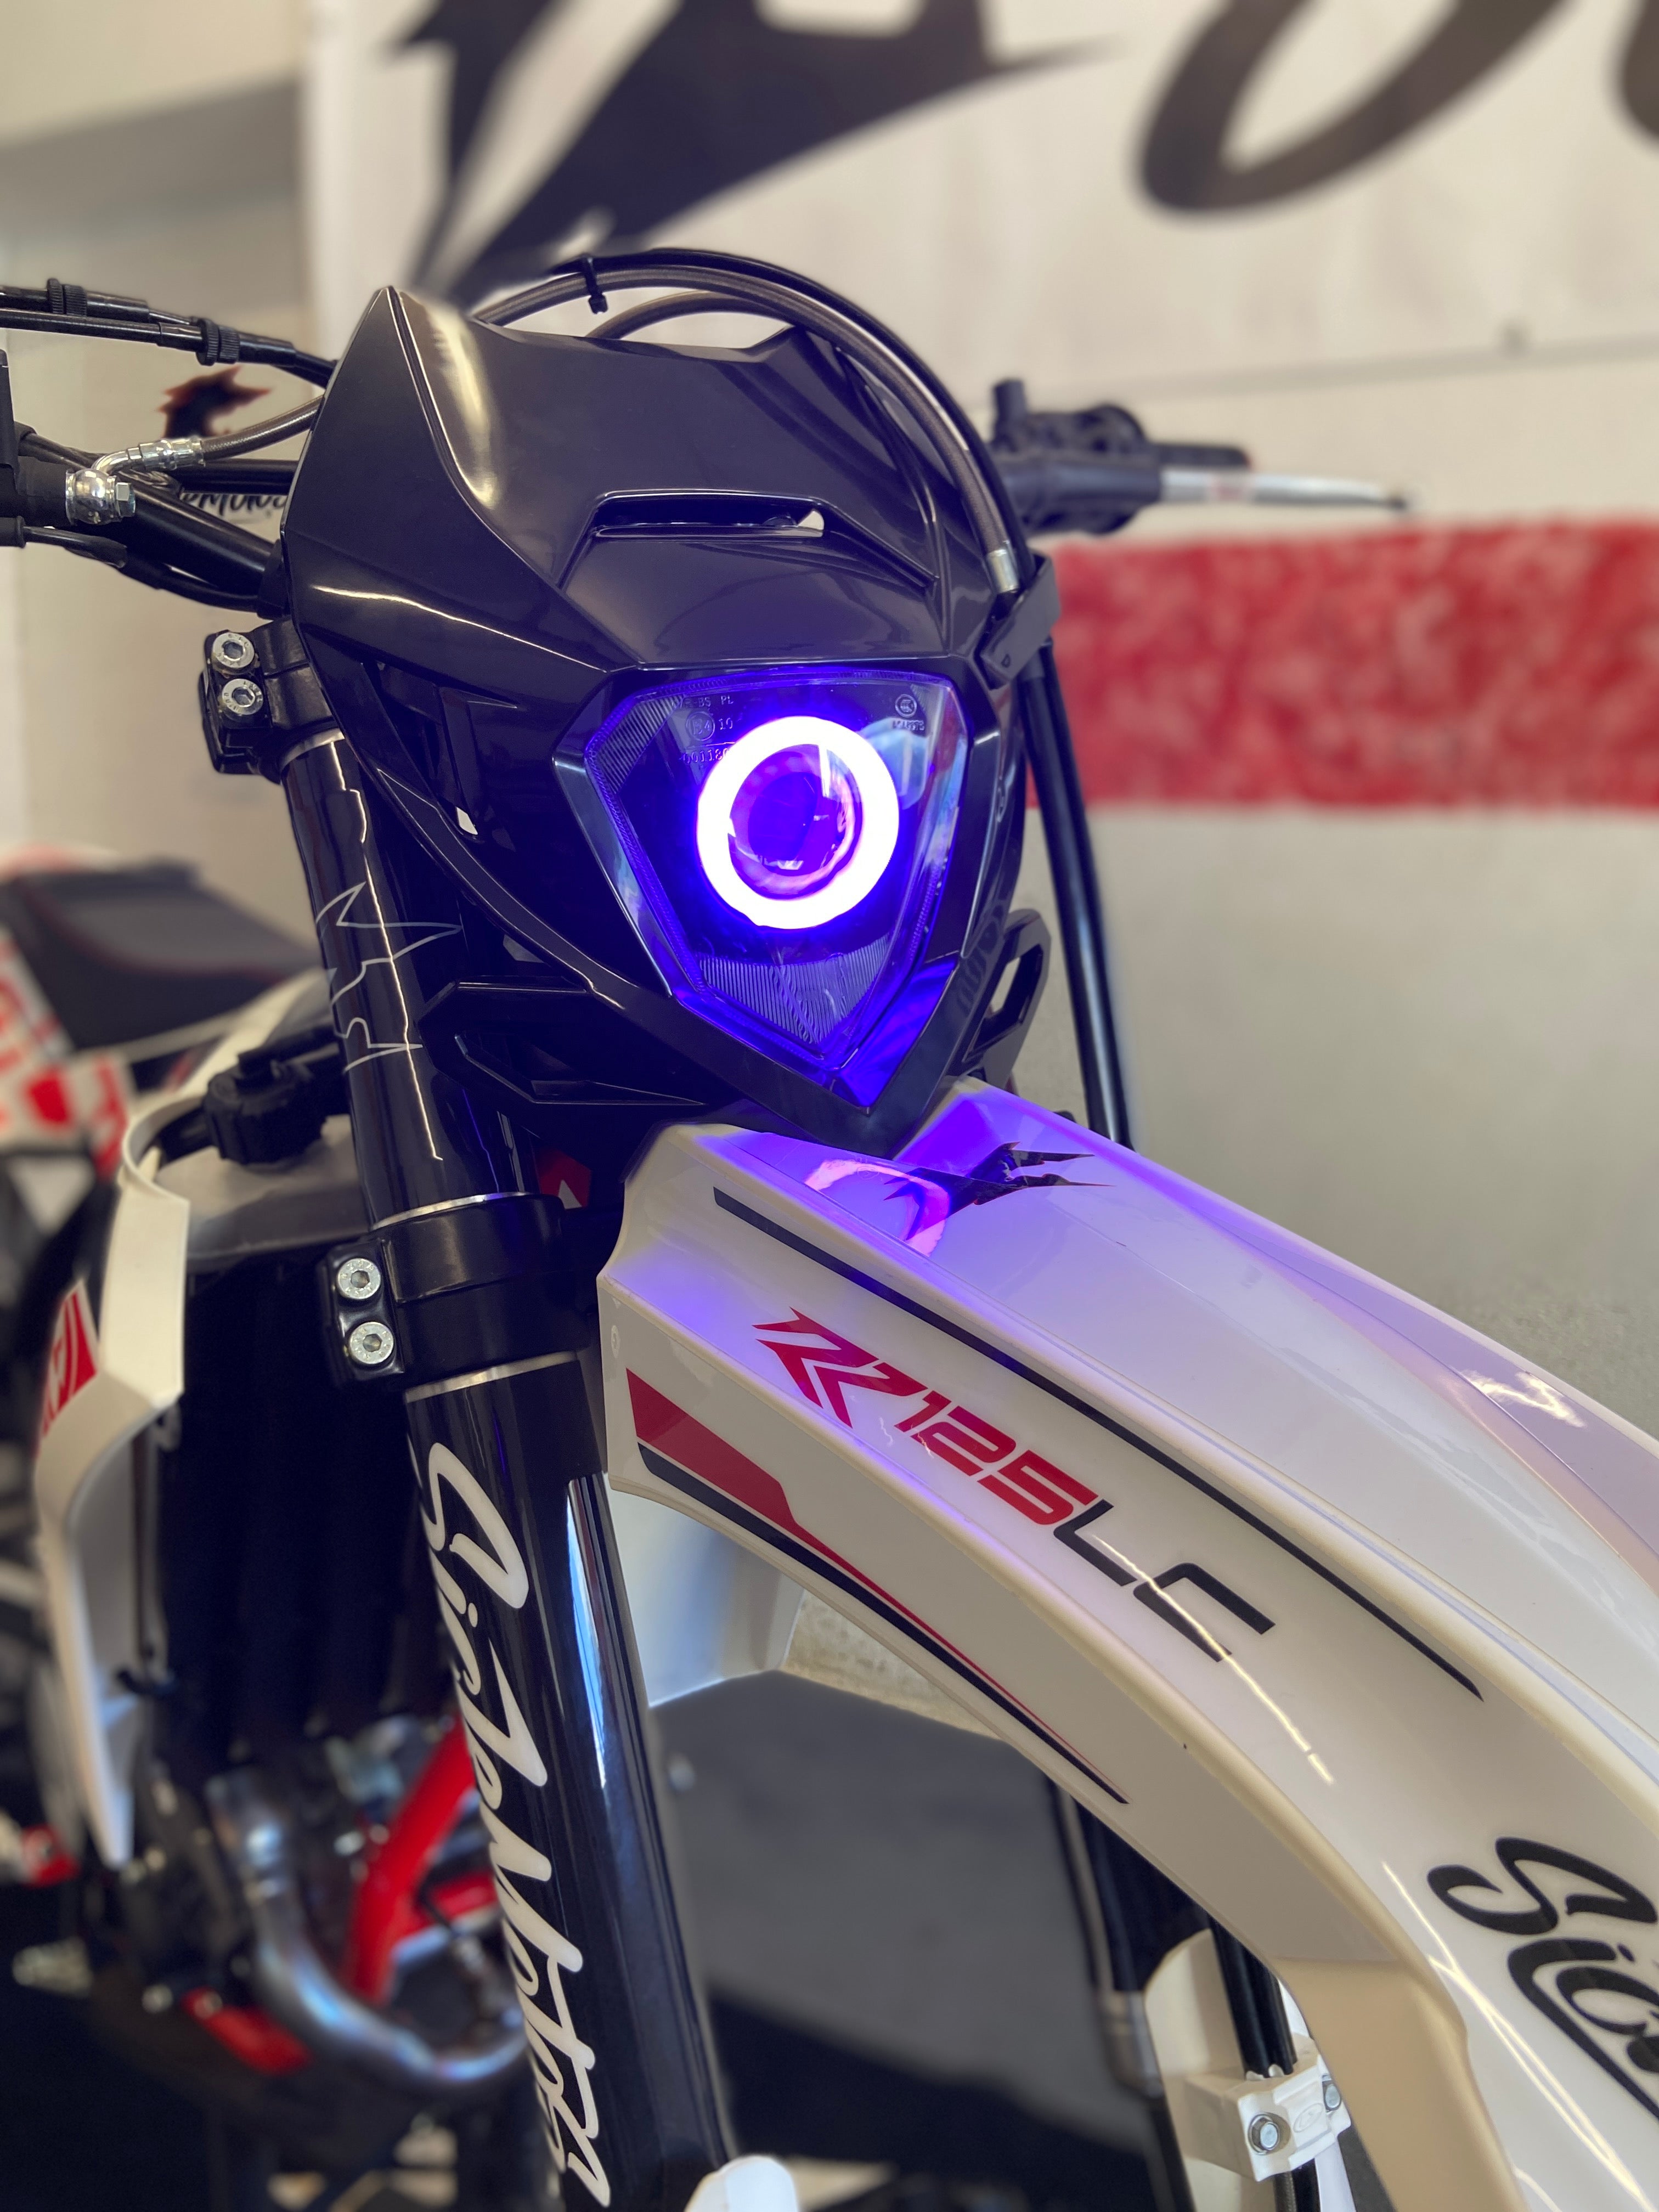 Honda PXR PX 50 Motorrad LED Scheinwerfer